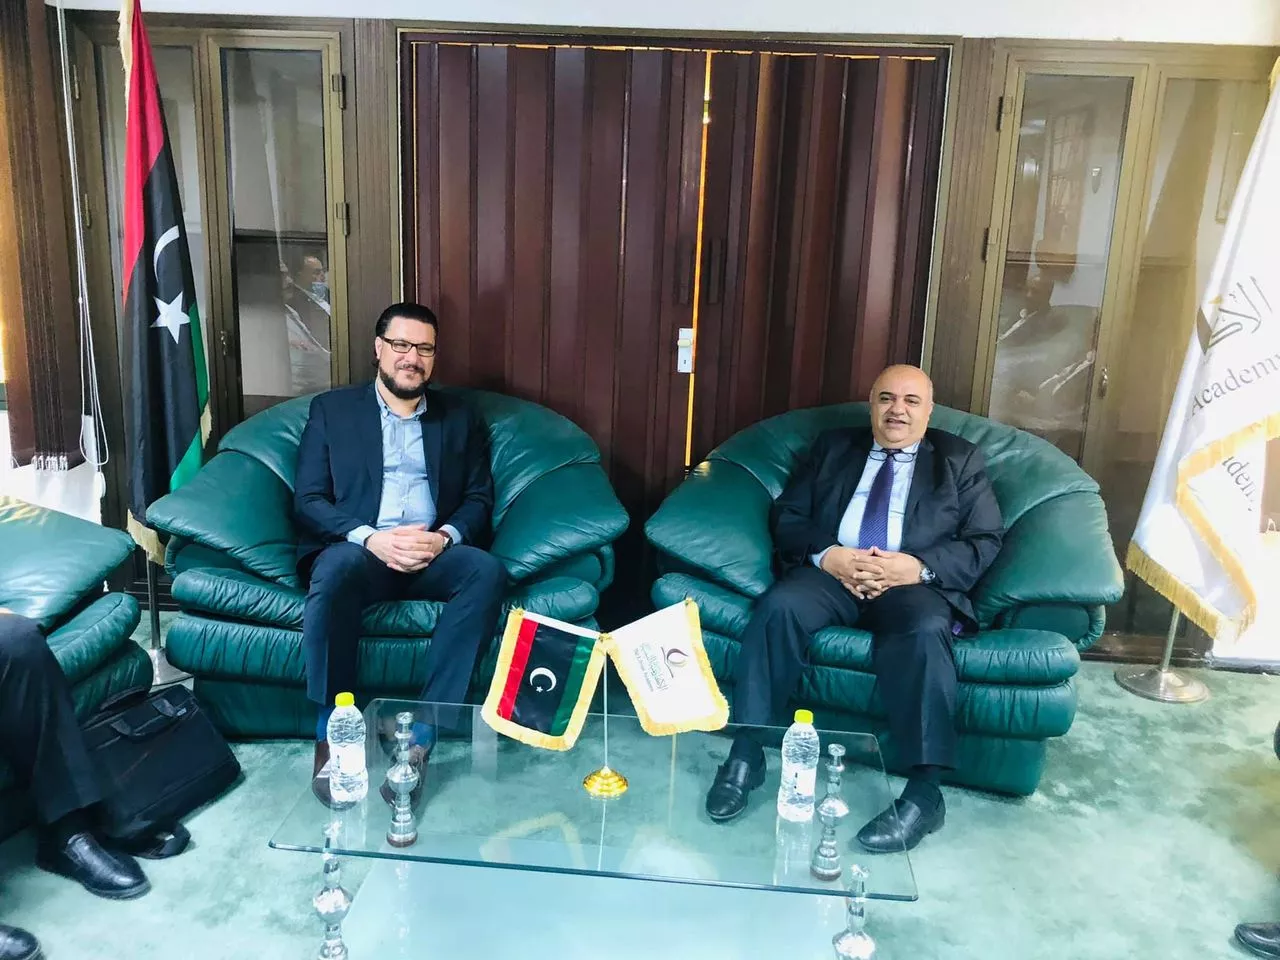 لقاء مشترك بين رئيس الأكاديمية الليبية للدراسات العليا و رئيس الهيئة الوطنية لمكافحة الفساد . زيارة السيد رئيس هيئة مكافحة الفساد